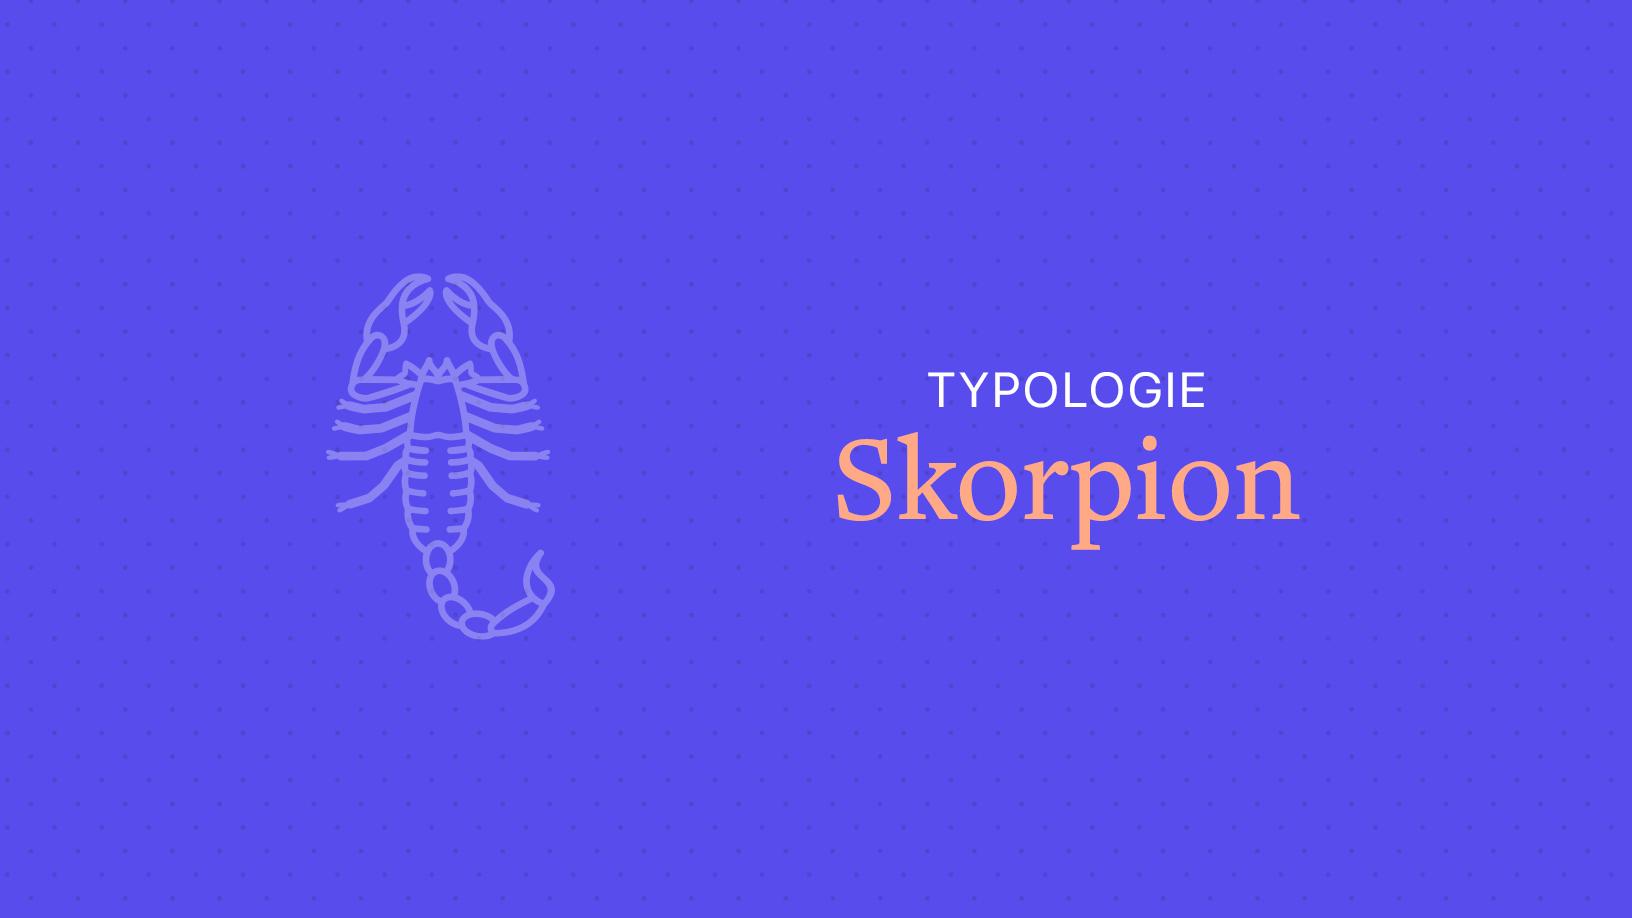 Der Skorpion in der Liebe